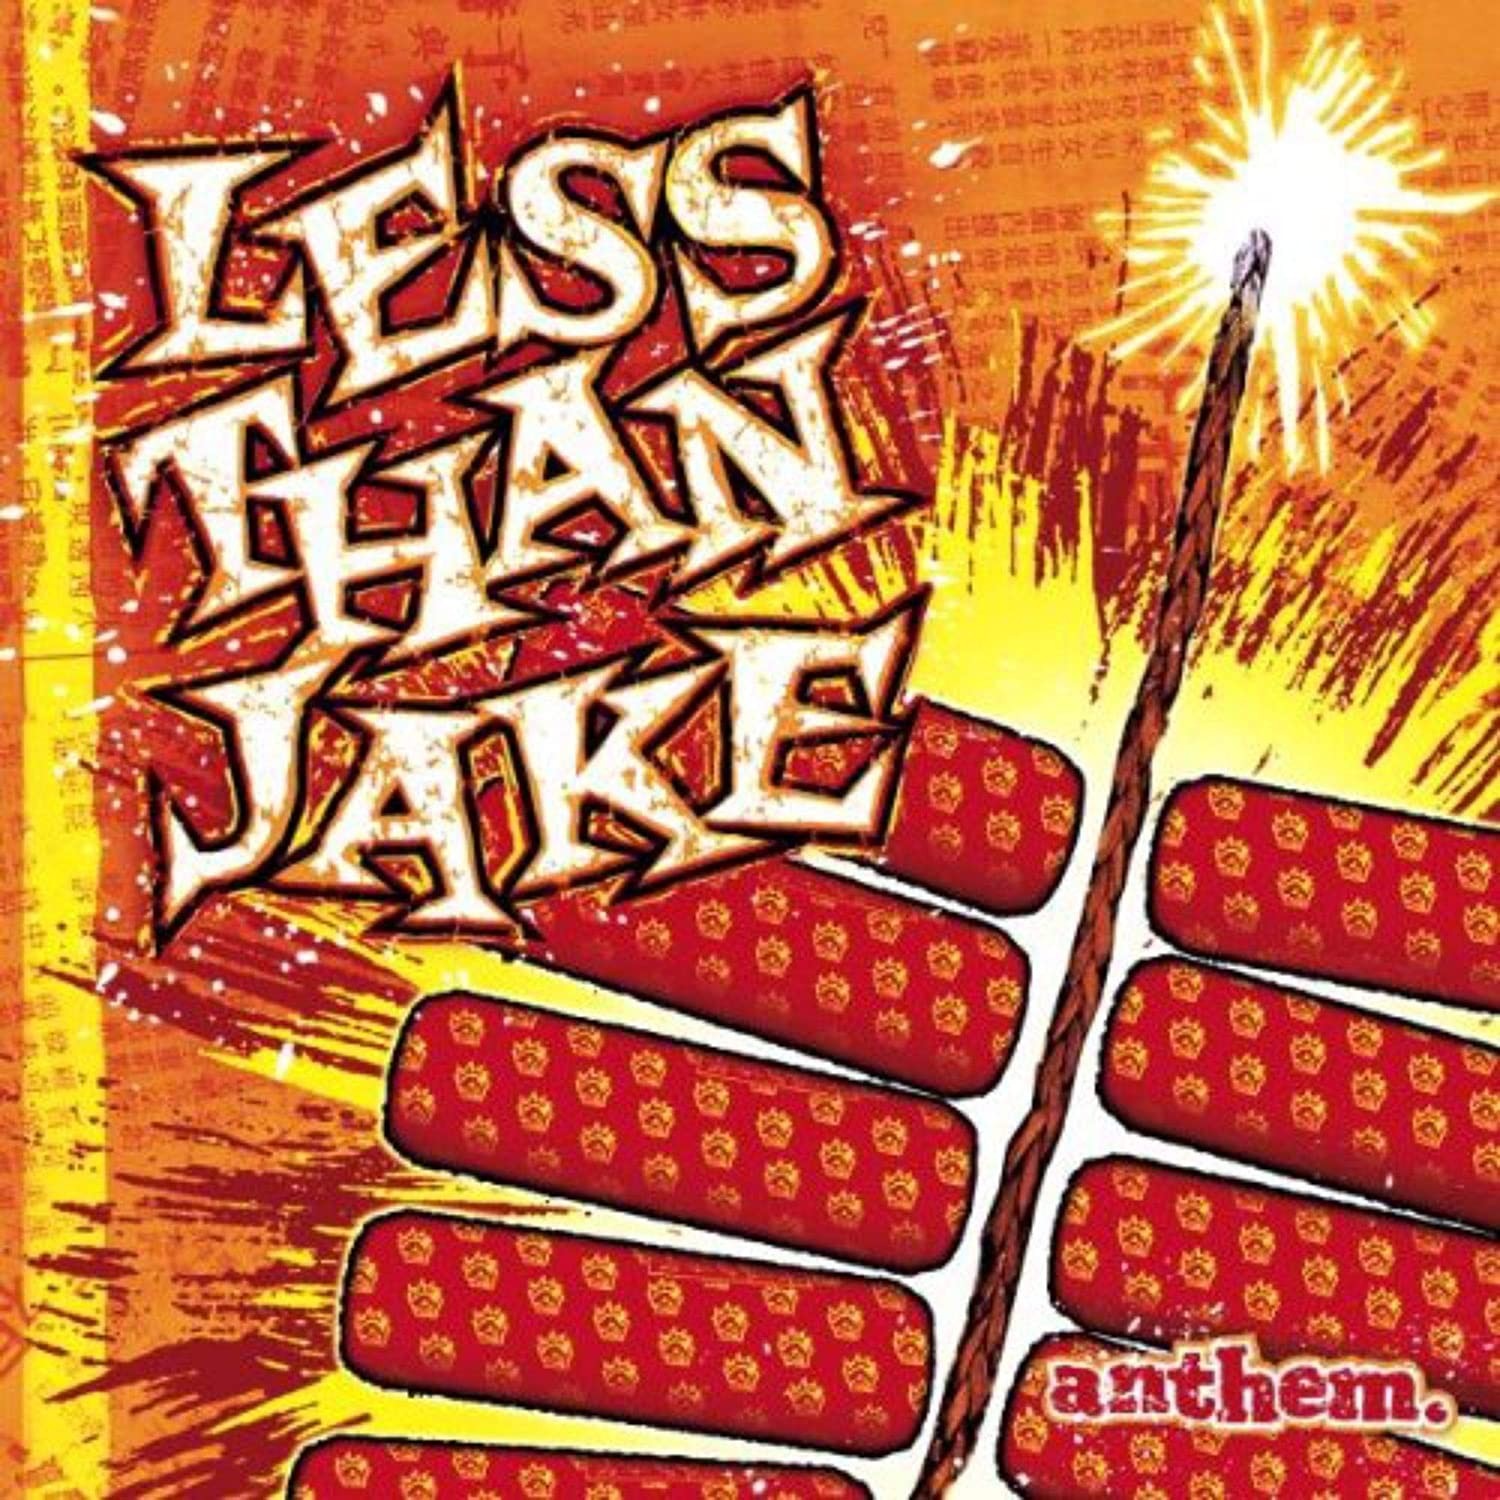 Less Than Jake - Anthem (Red/Yellow) LP